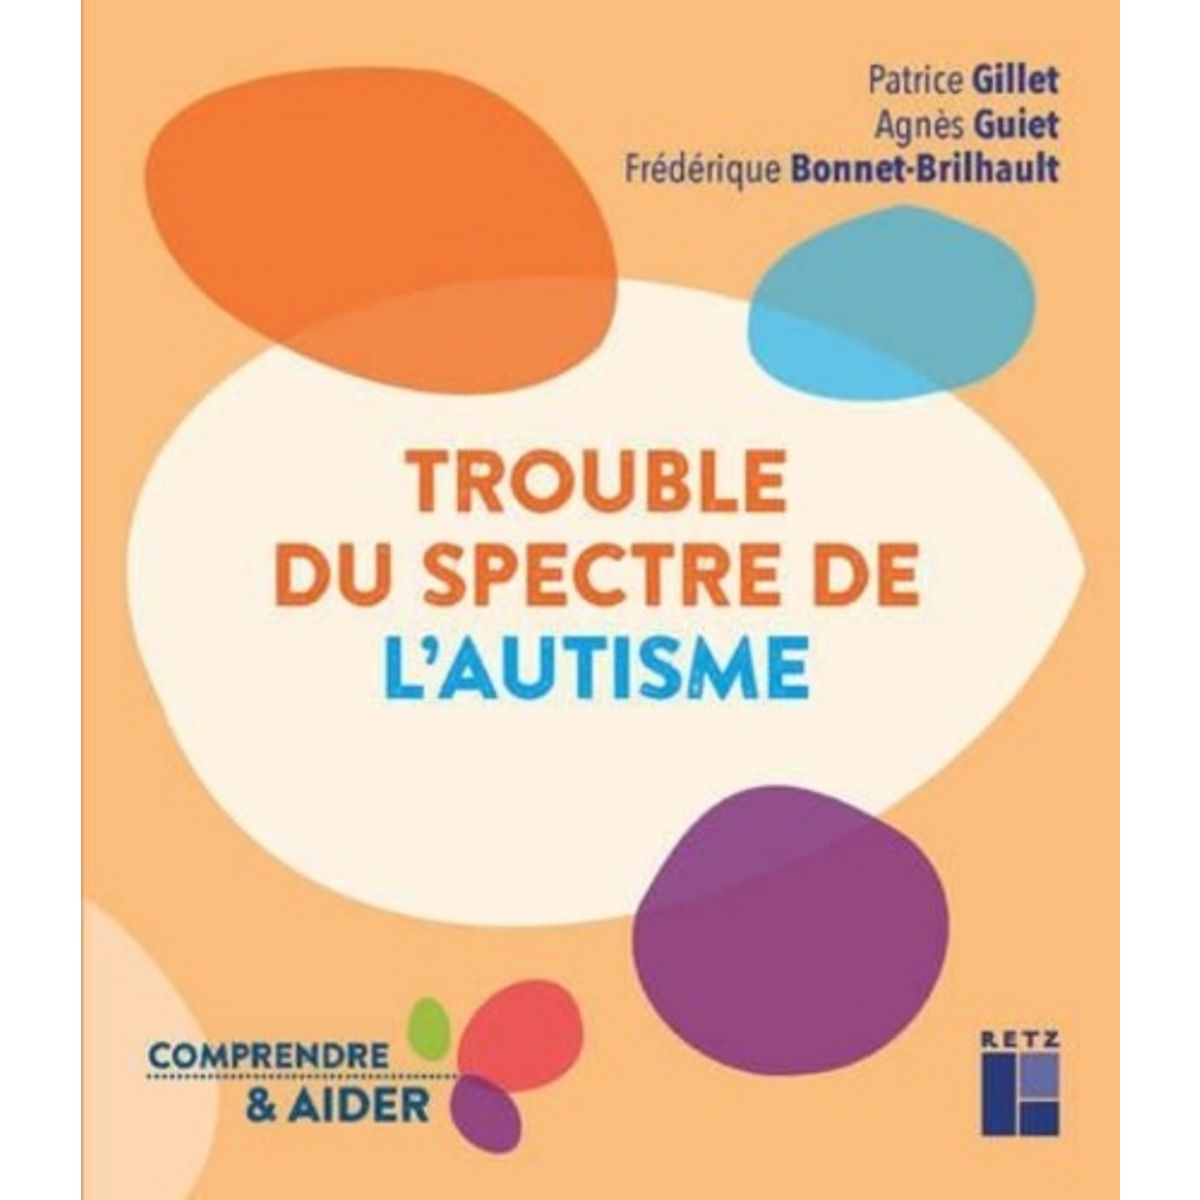  TROUBLE DU SPECTRE DE L'AUTISME, Gillet Patrice